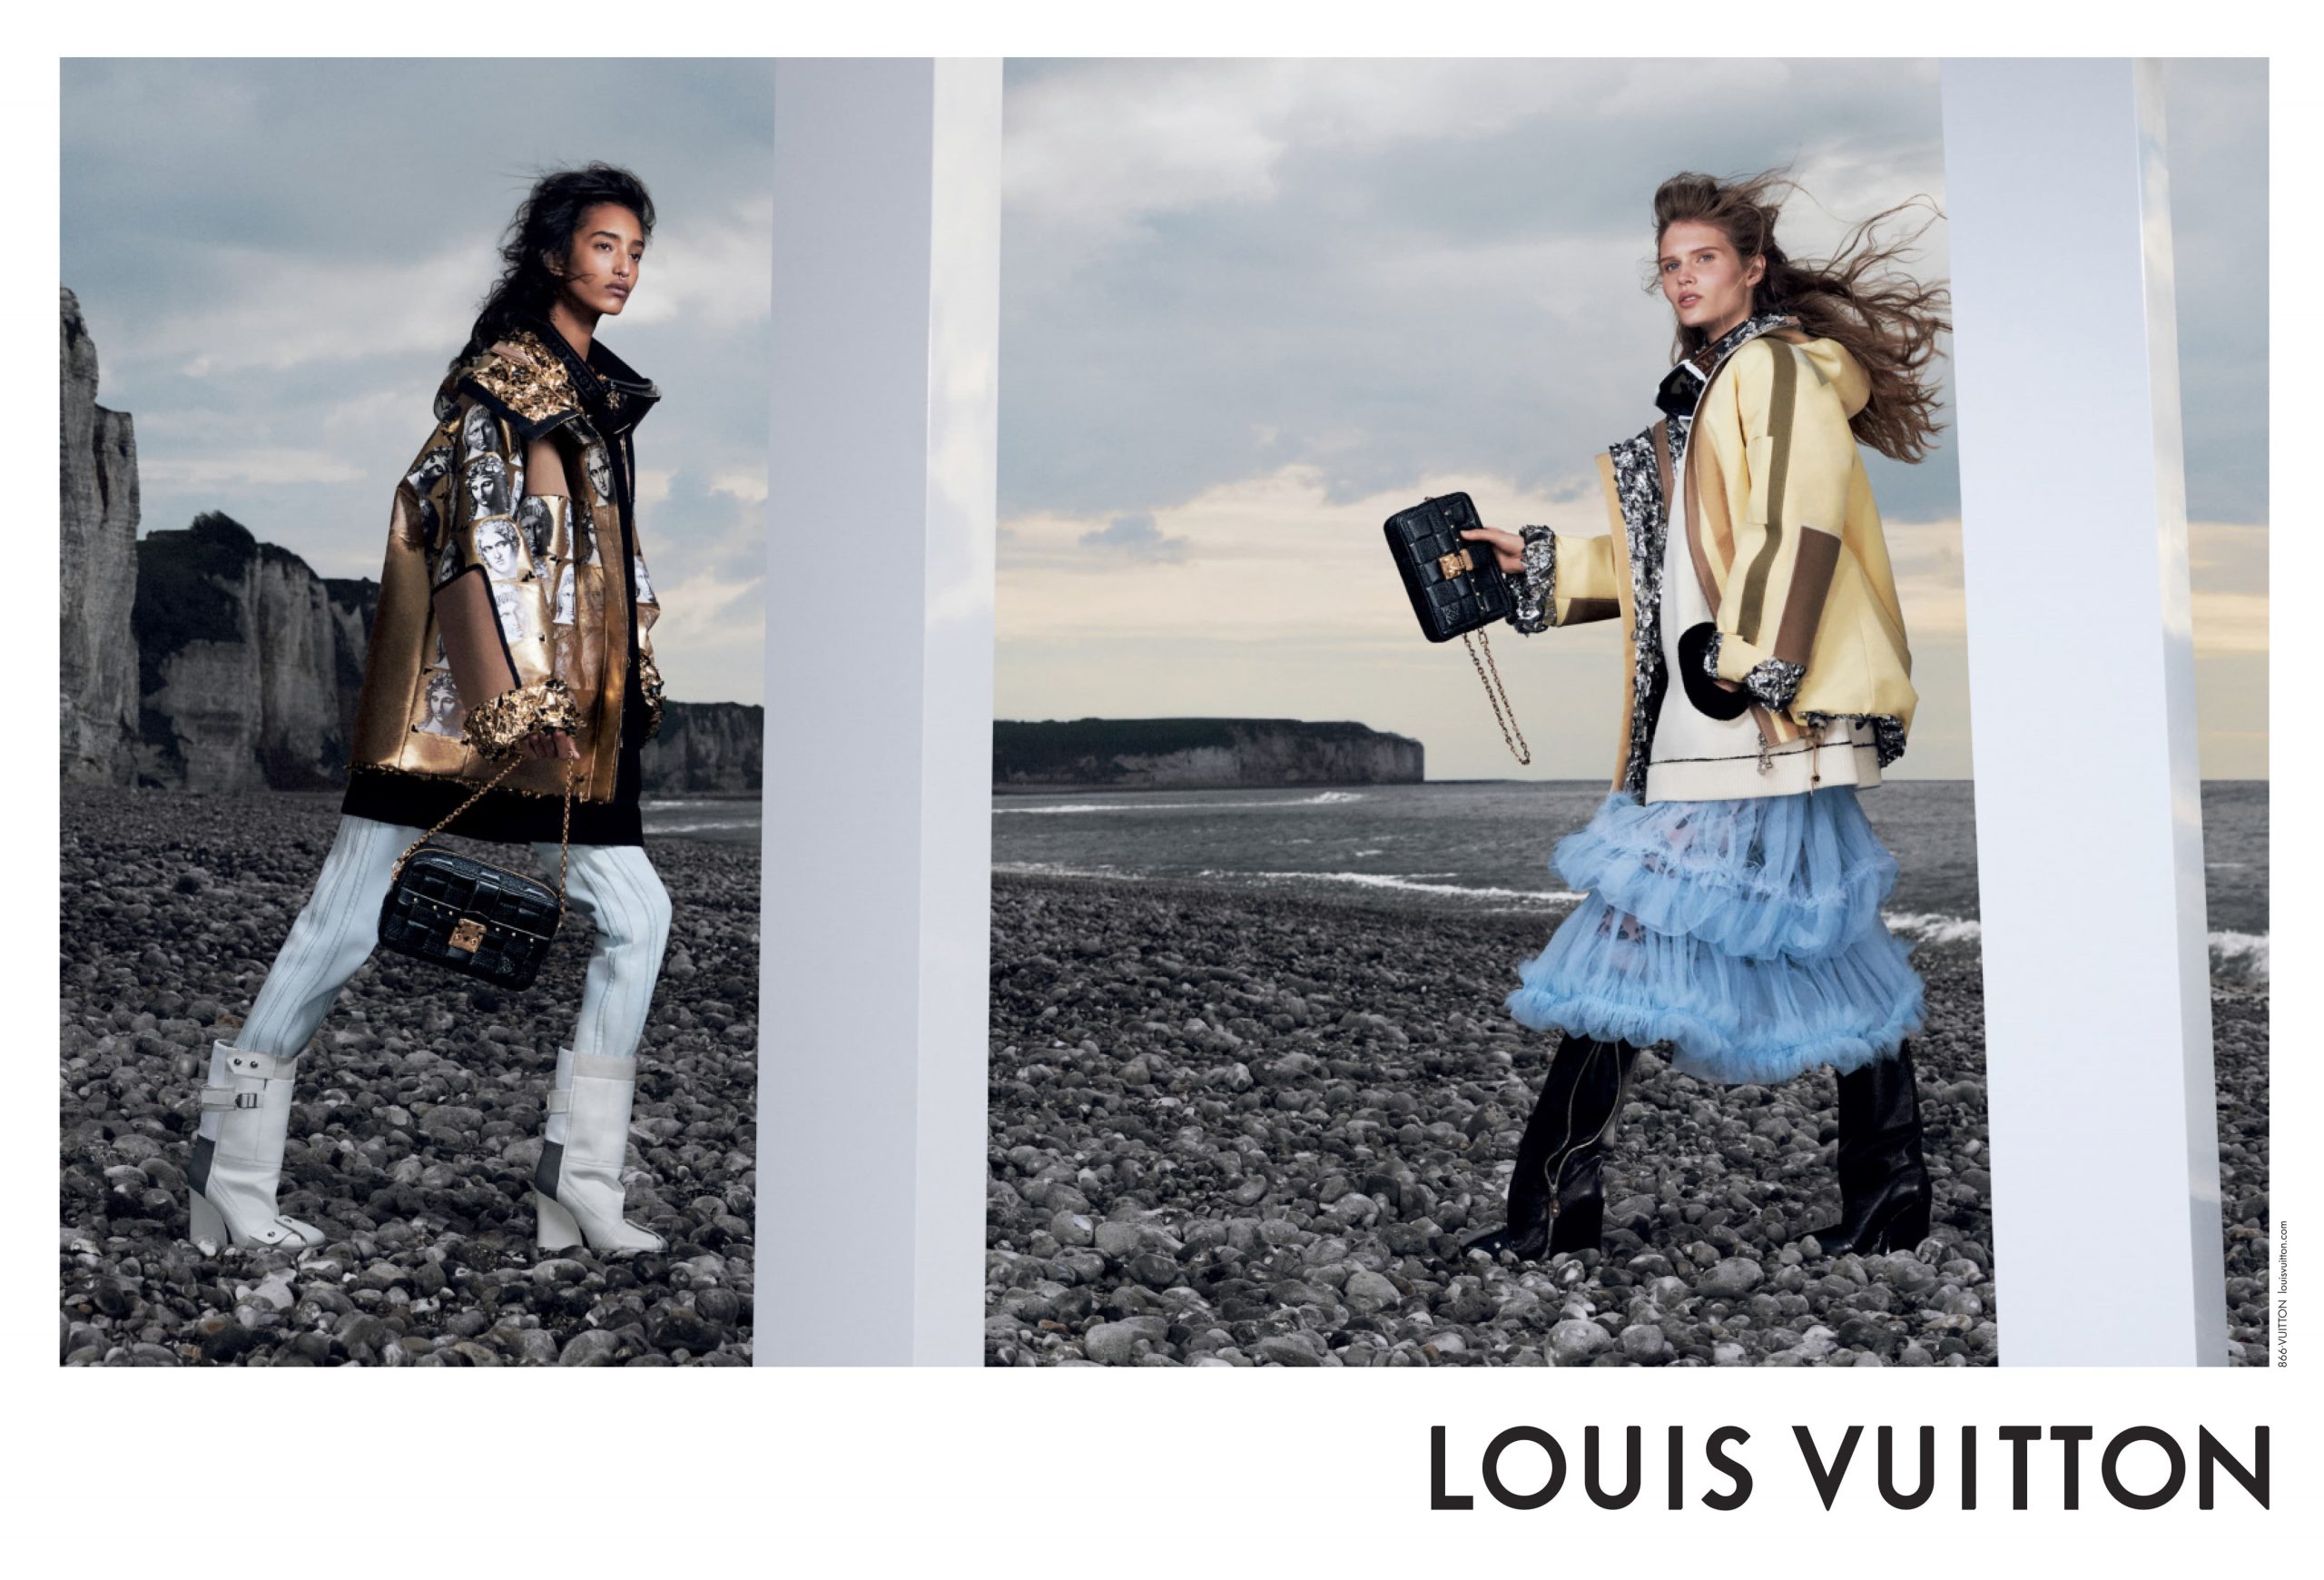 Louis Vuitton's pre-Fall/Winter 2020-2021 campaign transforms